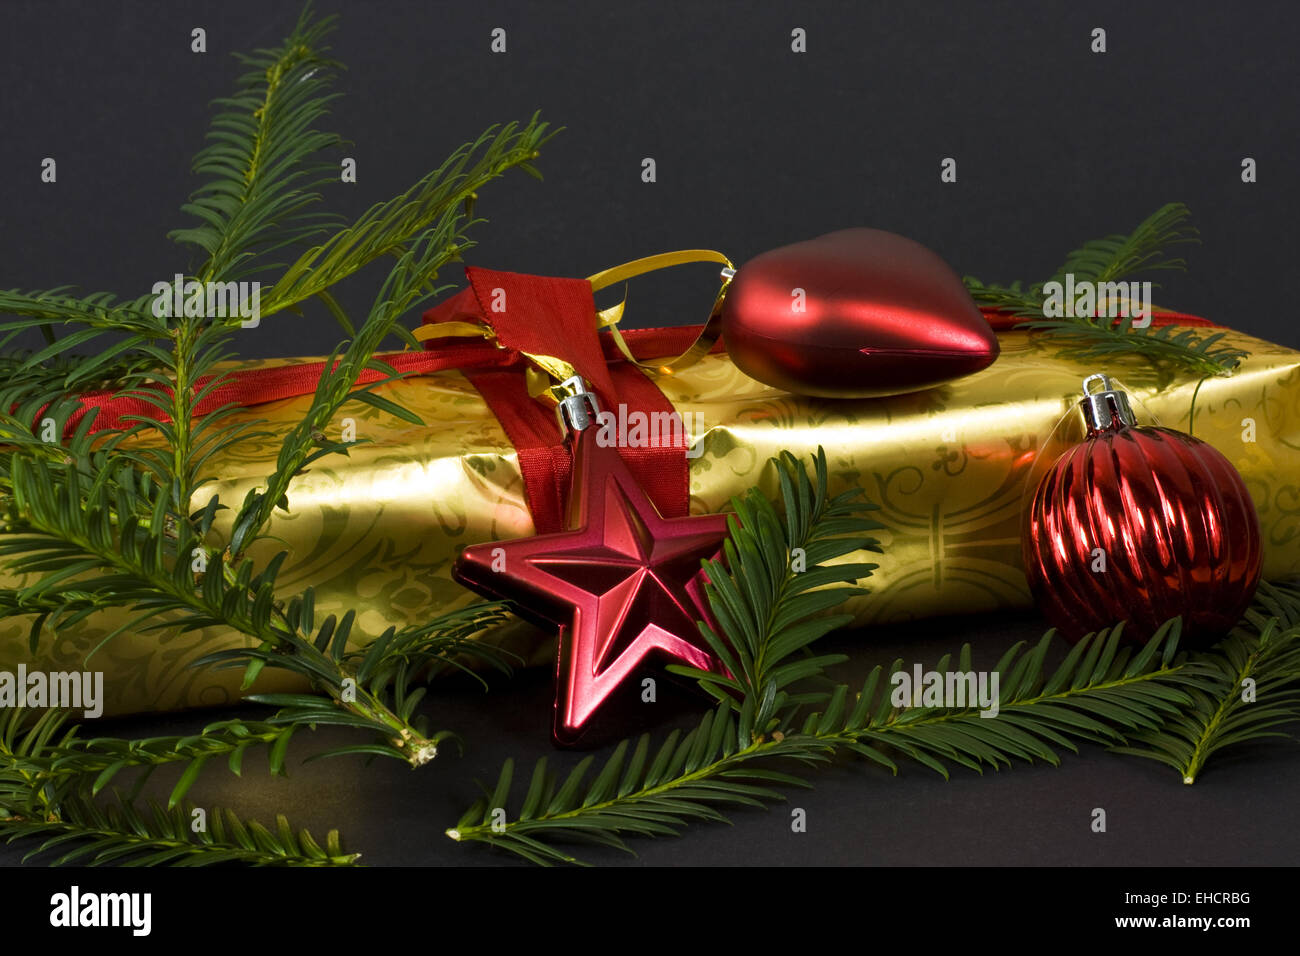 Weihnachtsgeschenk, christmas present Stock Photo